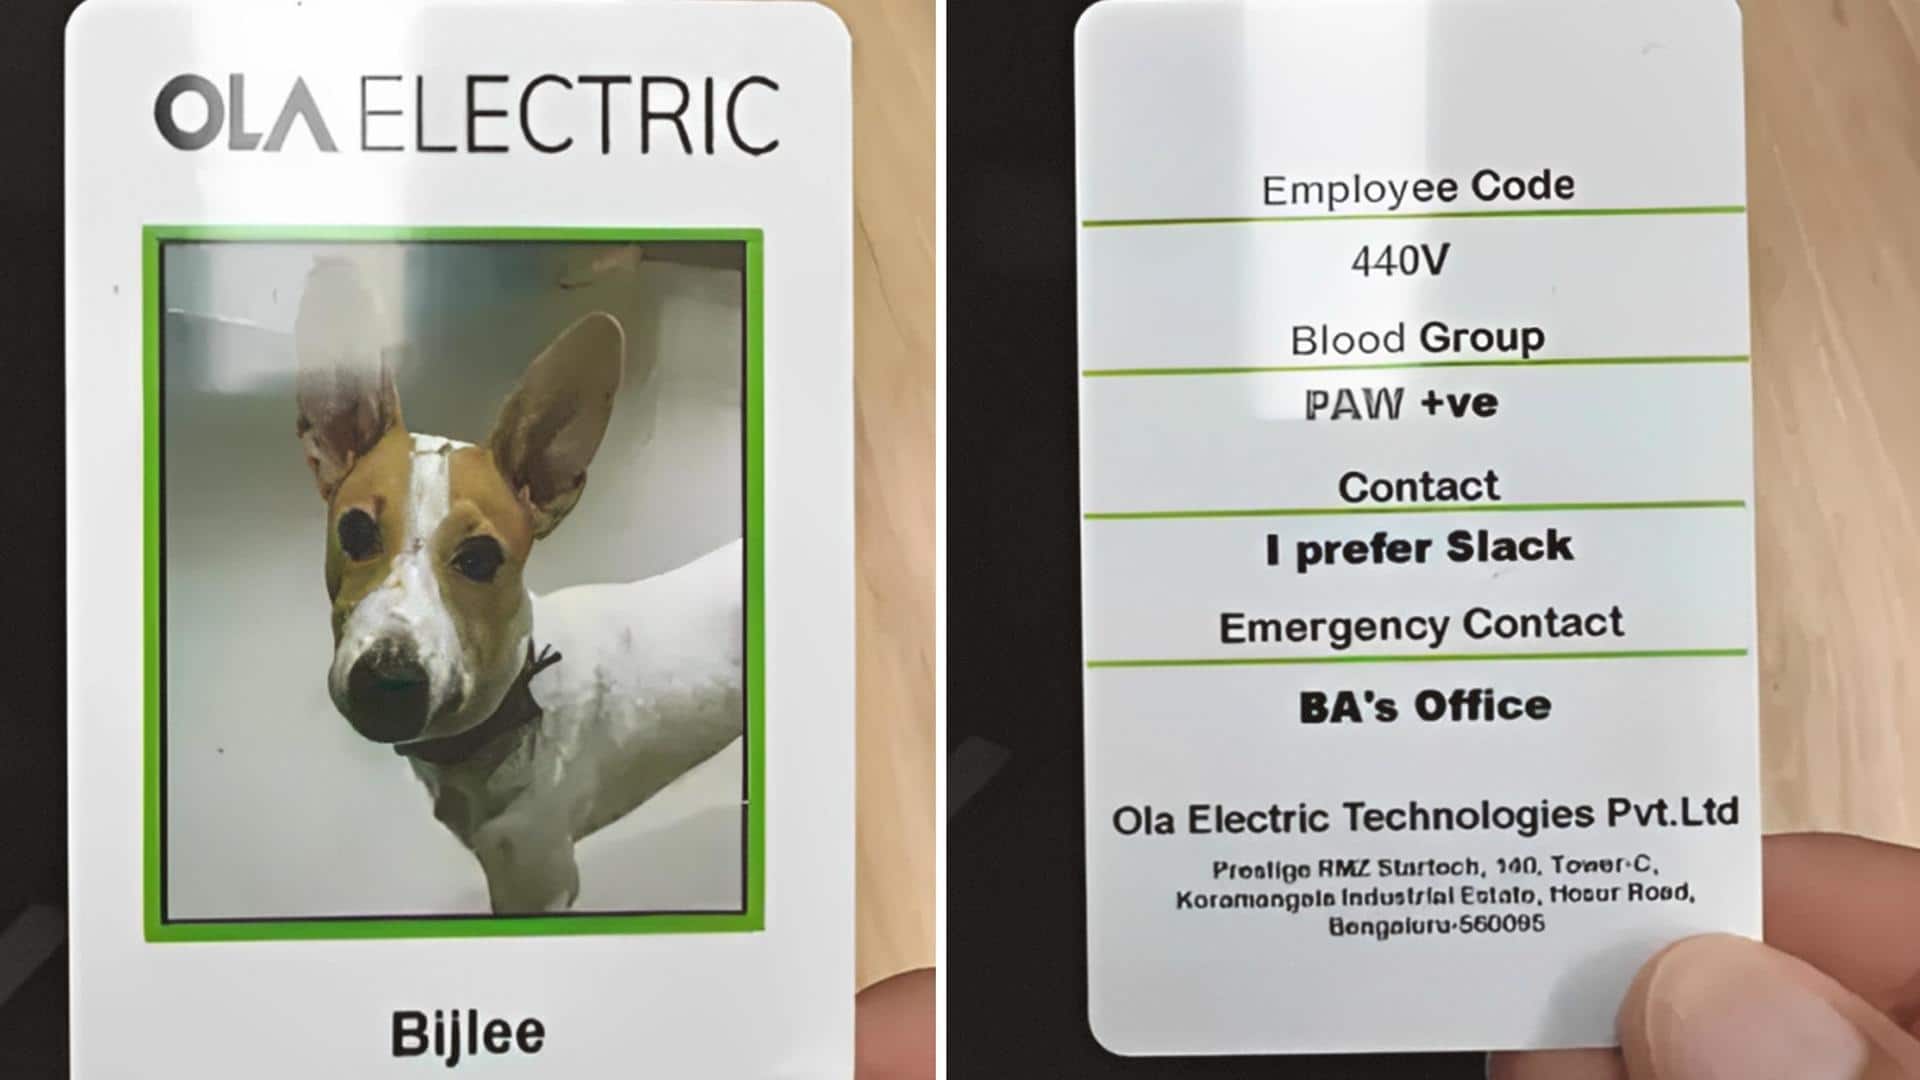 Meet Bijlee, Ola Electric's new pet employee